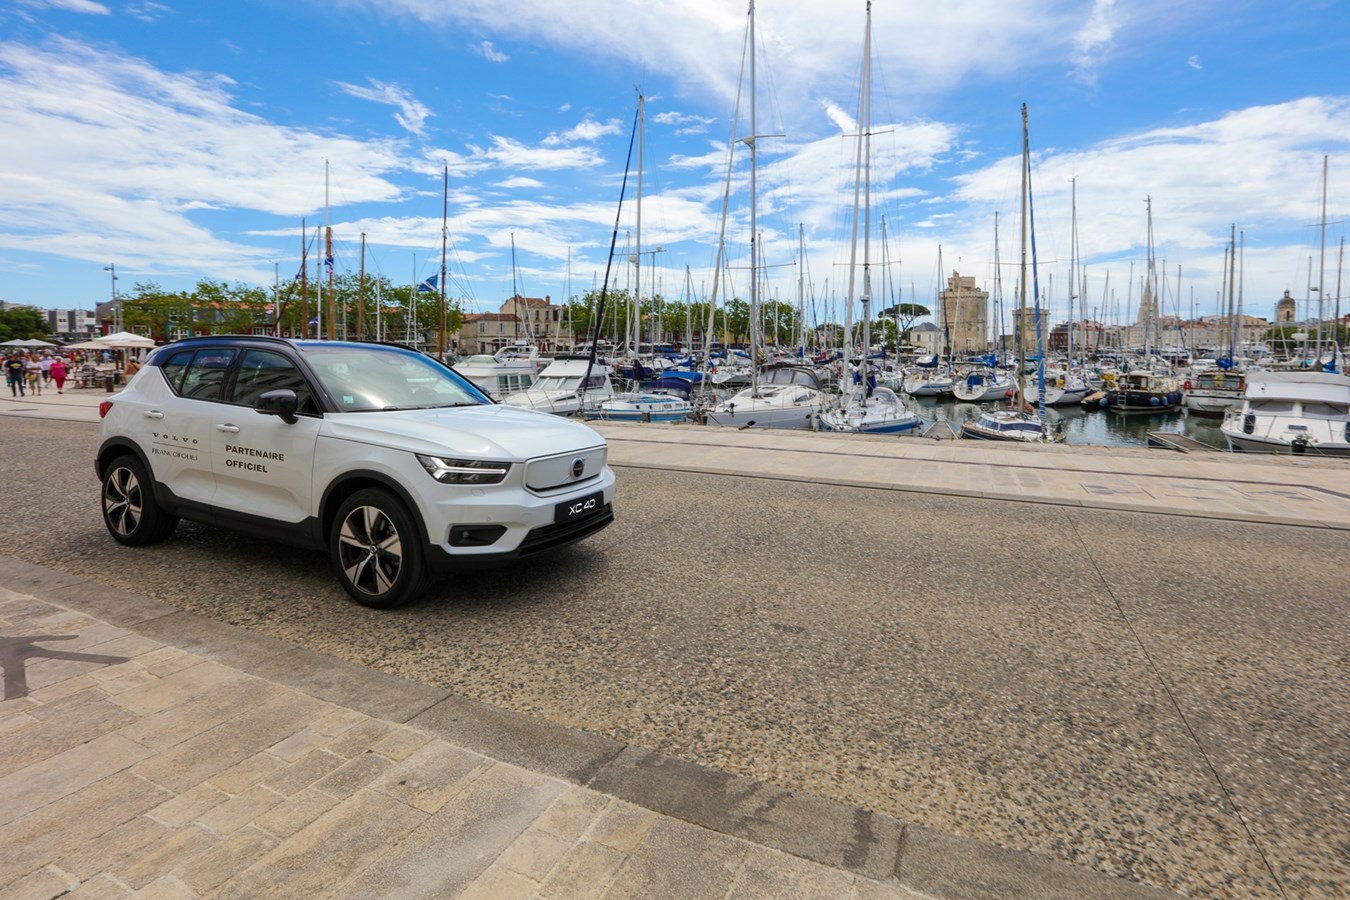 Crédit photo : Studio Monsieur U - Volvo Car France devient le nouveau partenaire automobile du festival des Francofolies de La Rochelle pour l’édition 2021